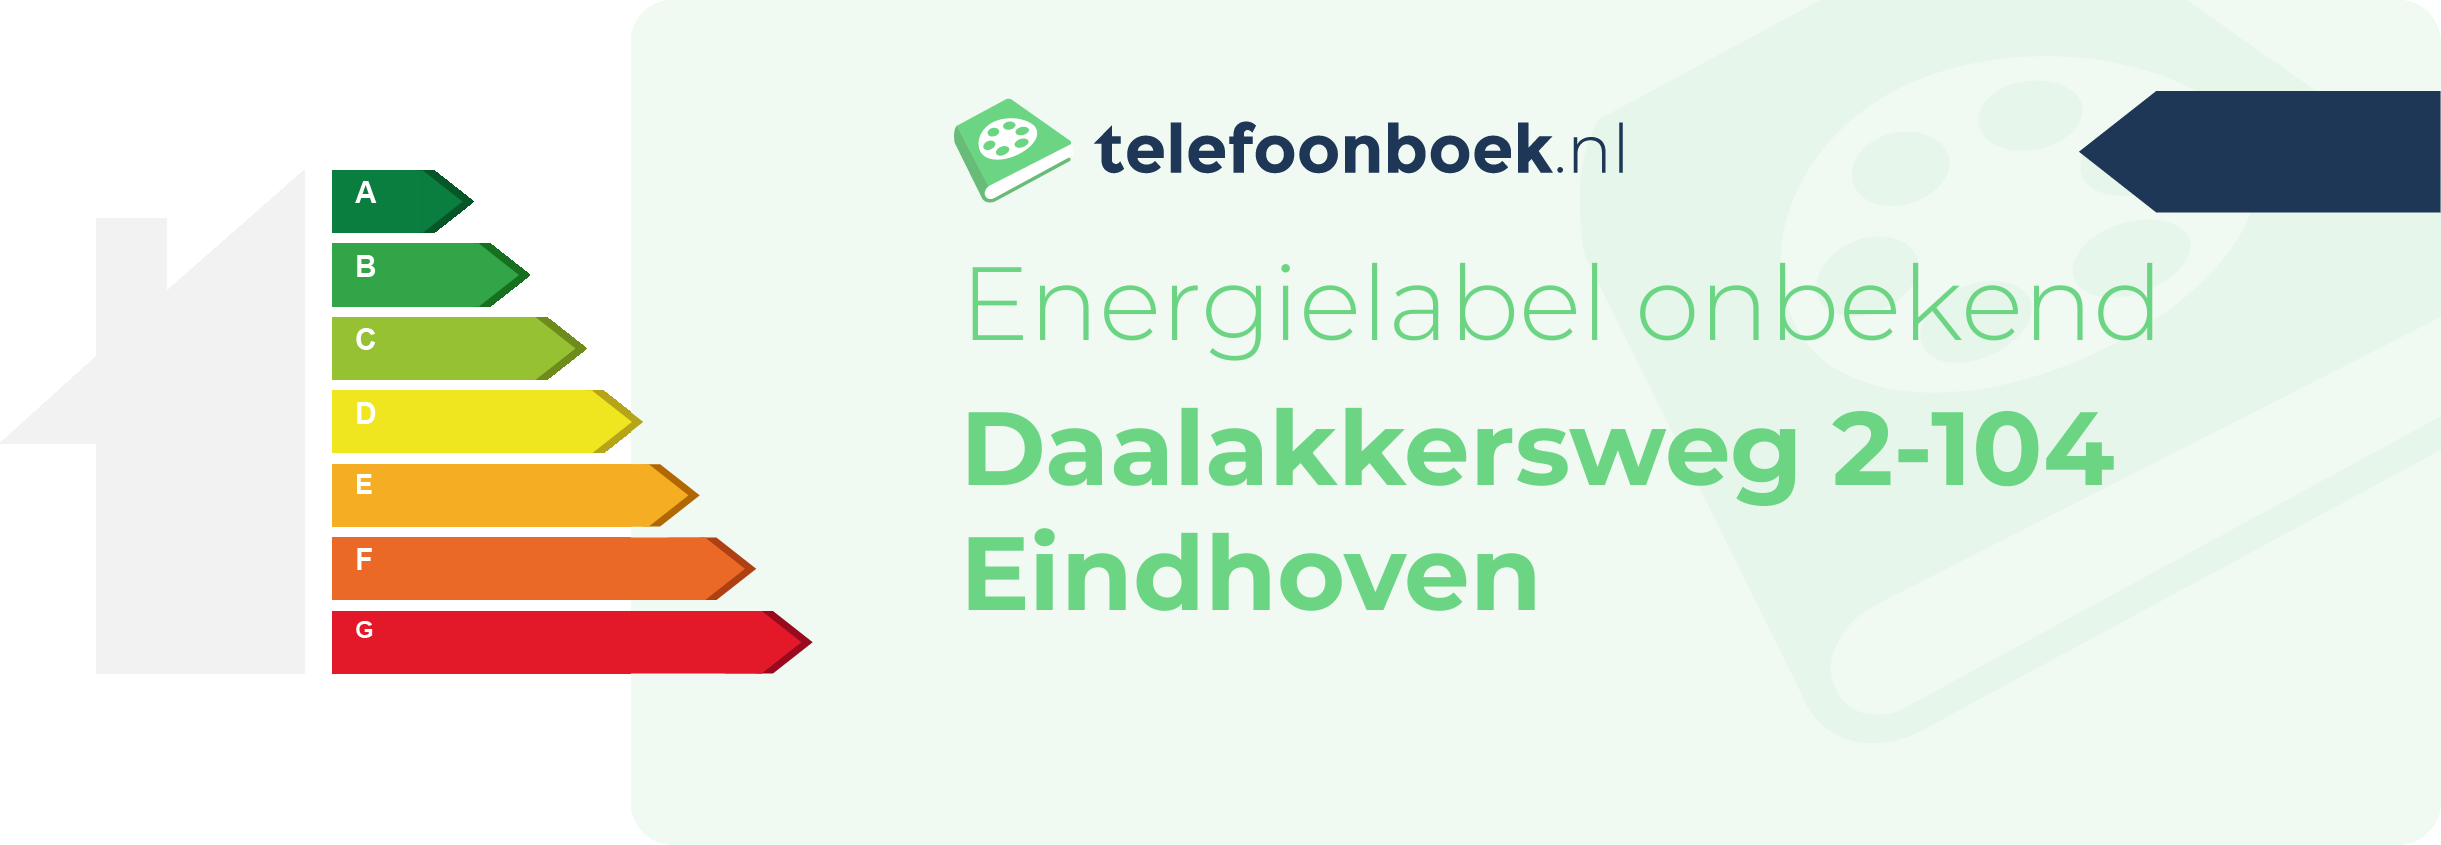 Energielabel Daalakkersweg 2-104 Eindhoven